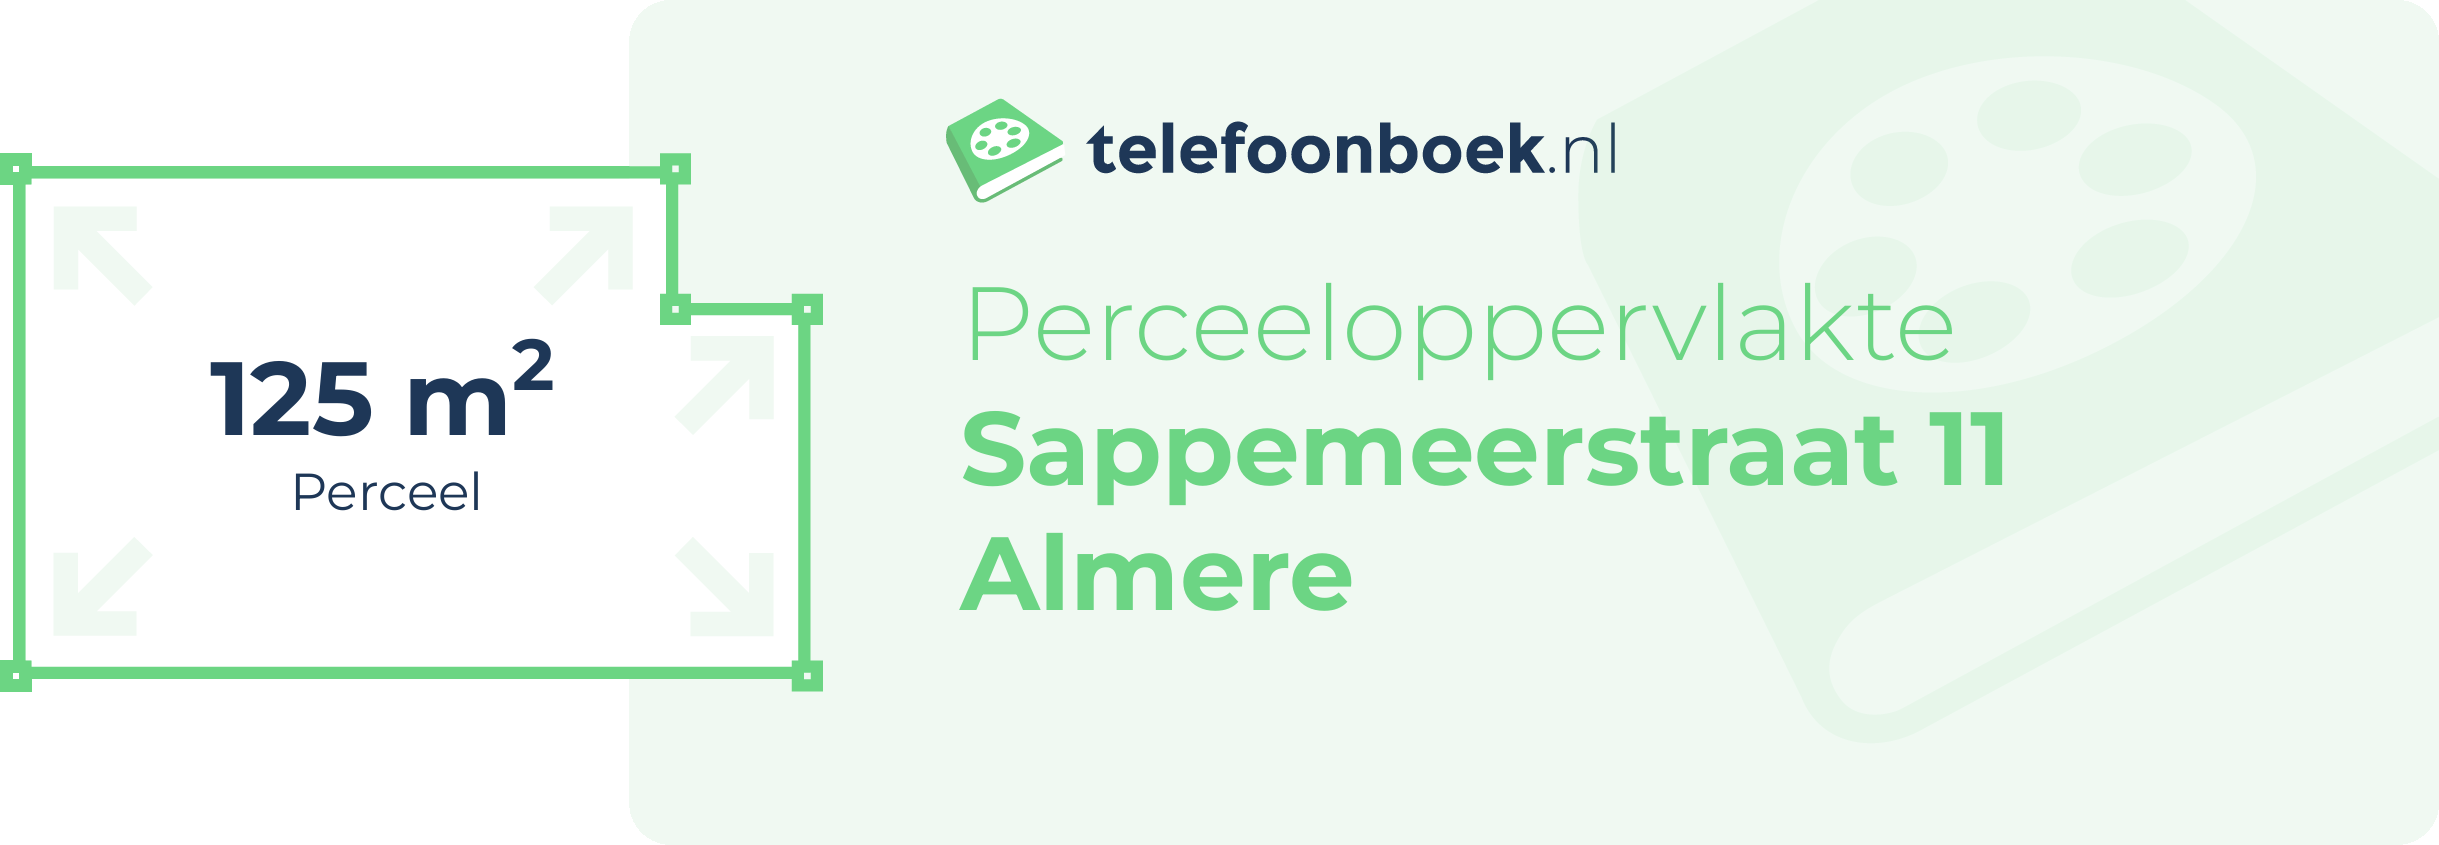 Perceeloppervlakte Sappemeerstraat 11 Almere